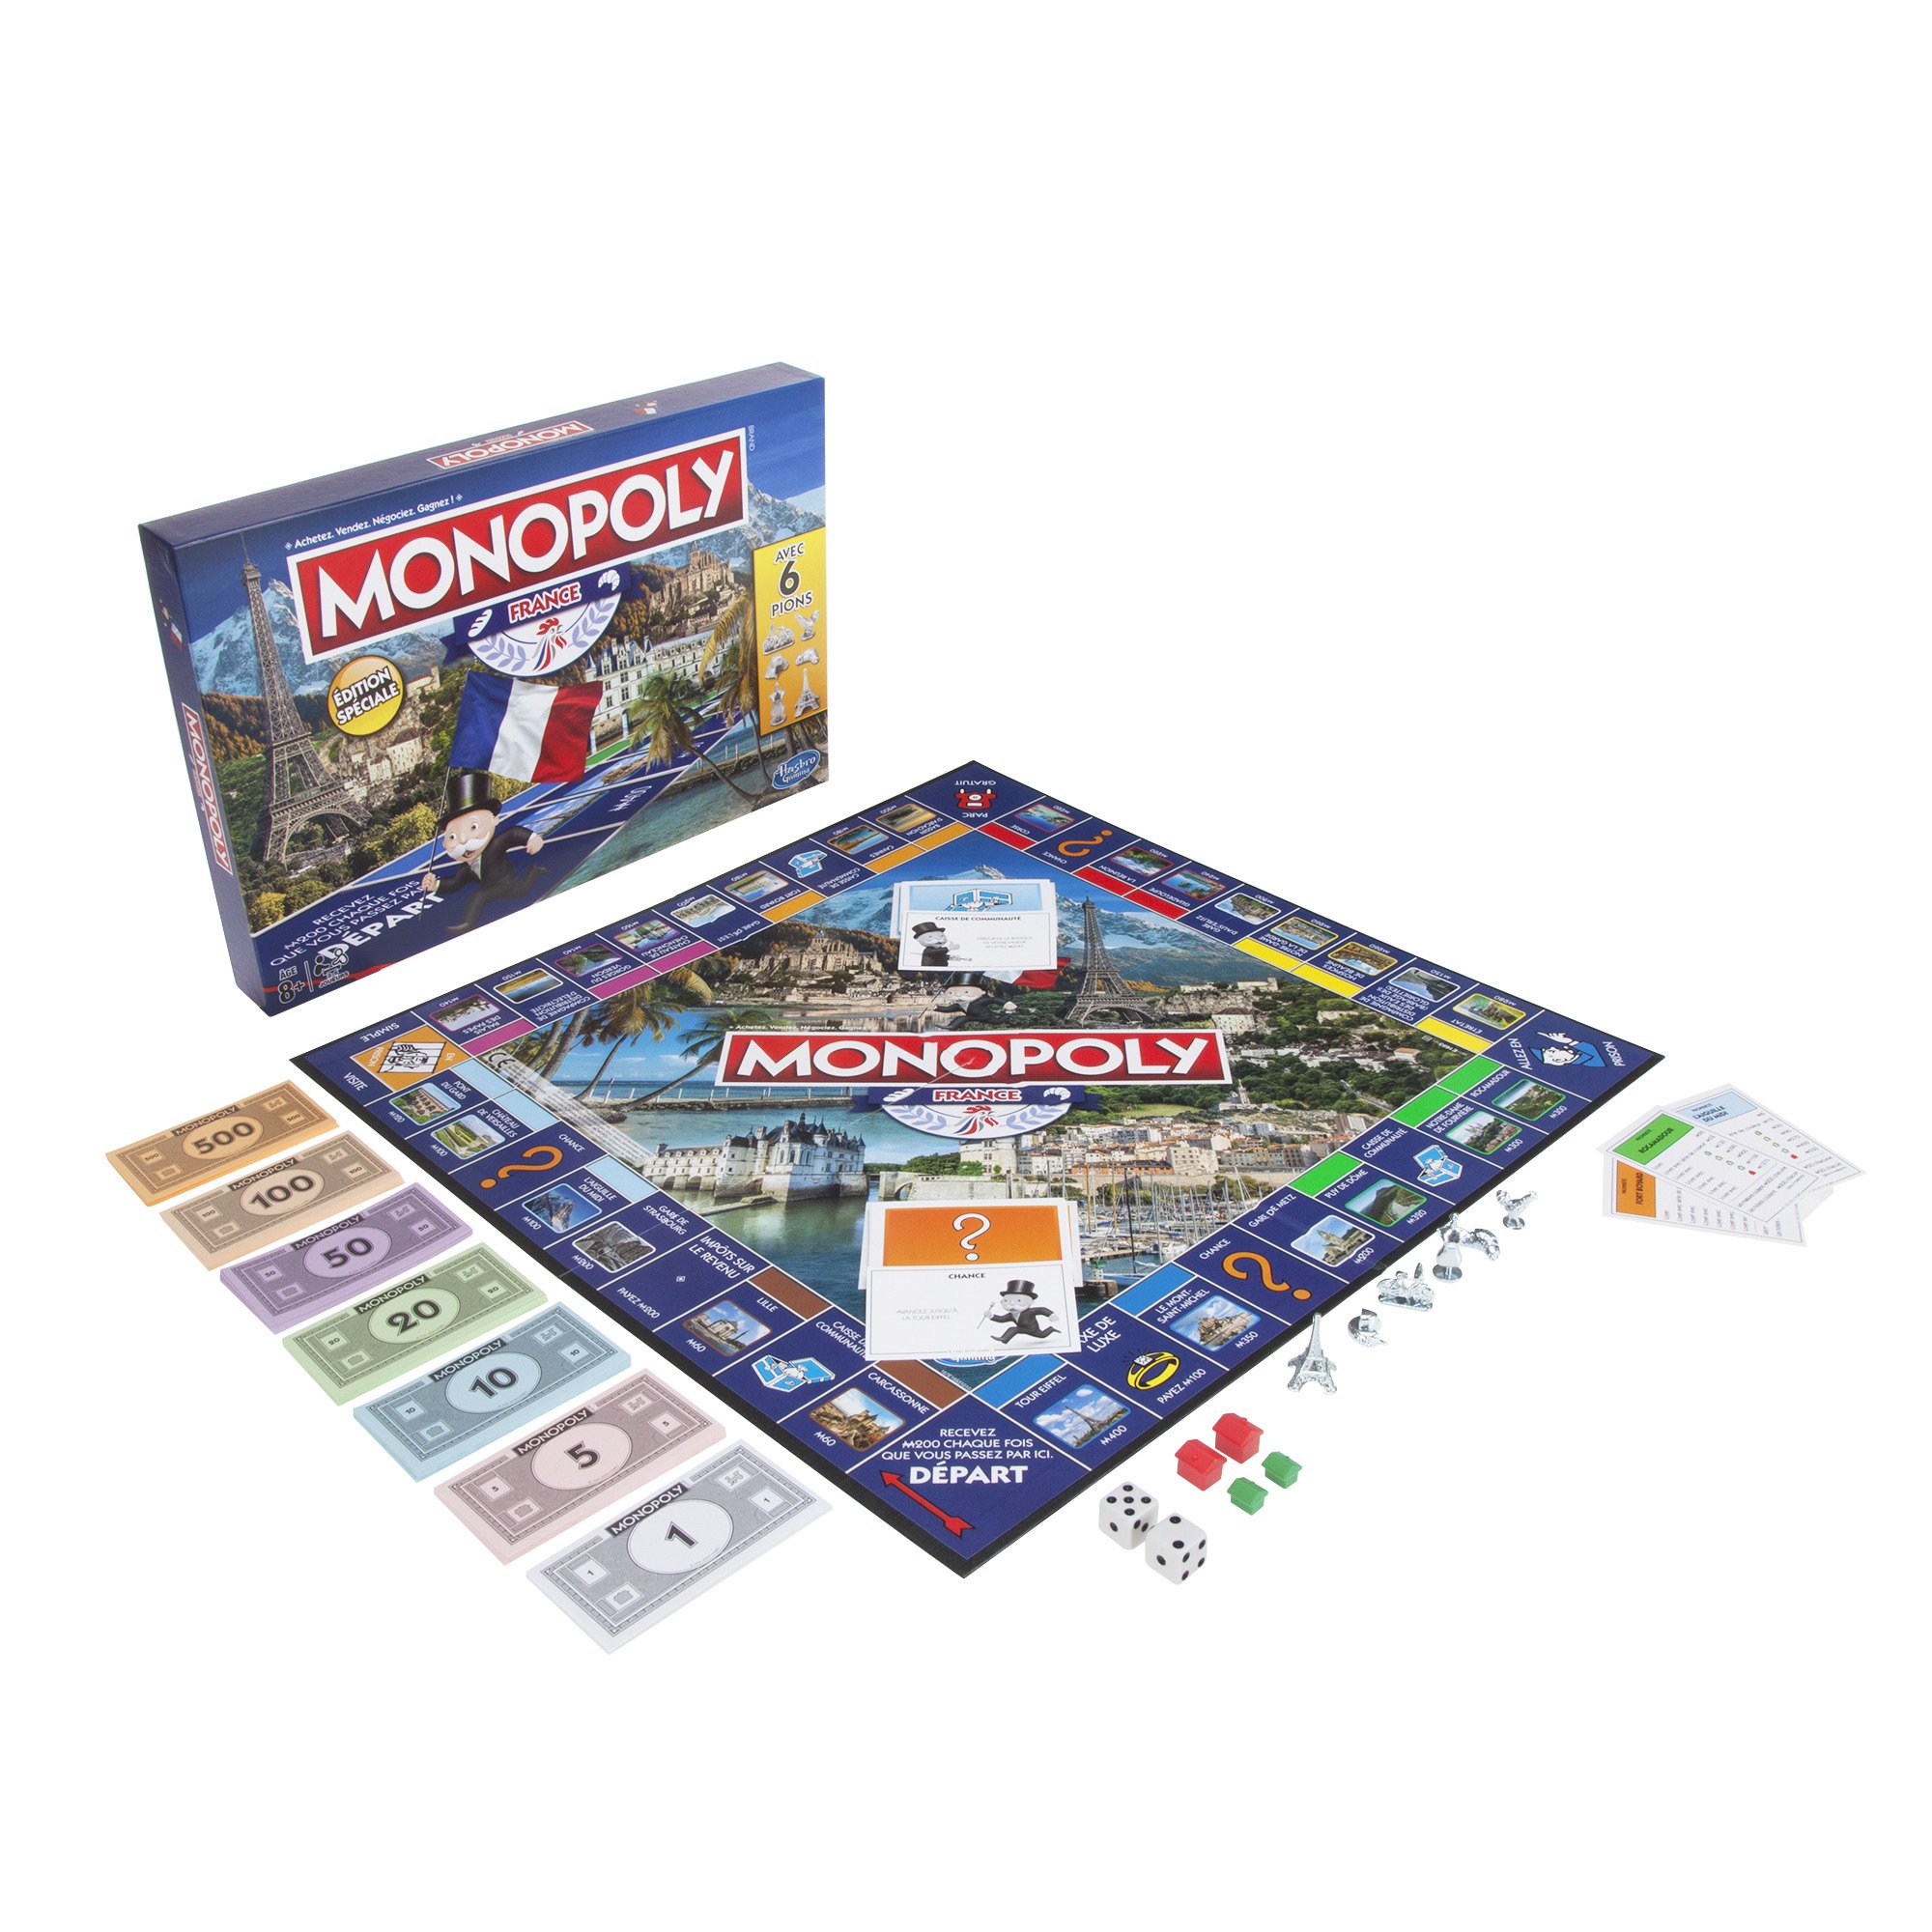 grand choix Monopoly Edition France - Jeu de Société - E1653 VkxF2HvpV meilleure vente